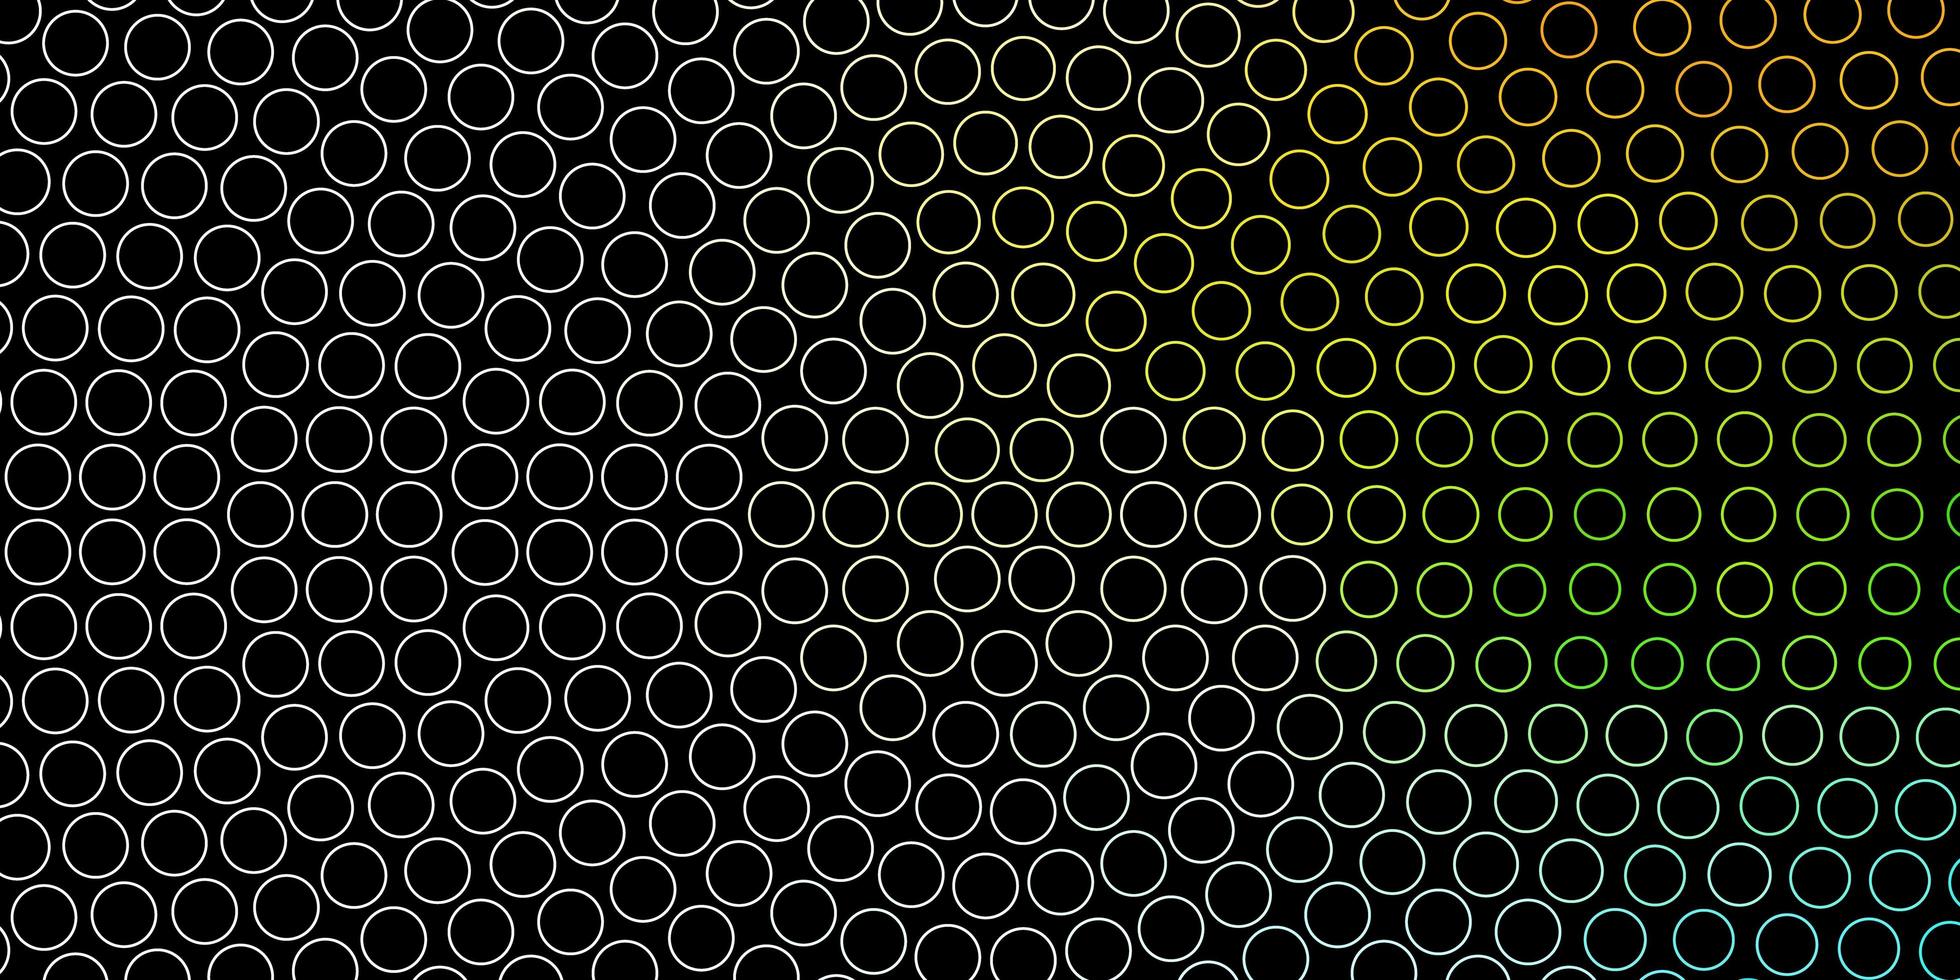 Plantilla de vector multicolor oscuro con círculos, discos de colores abstractos en un diseño de fondo degradado simple para carteles, pancartas